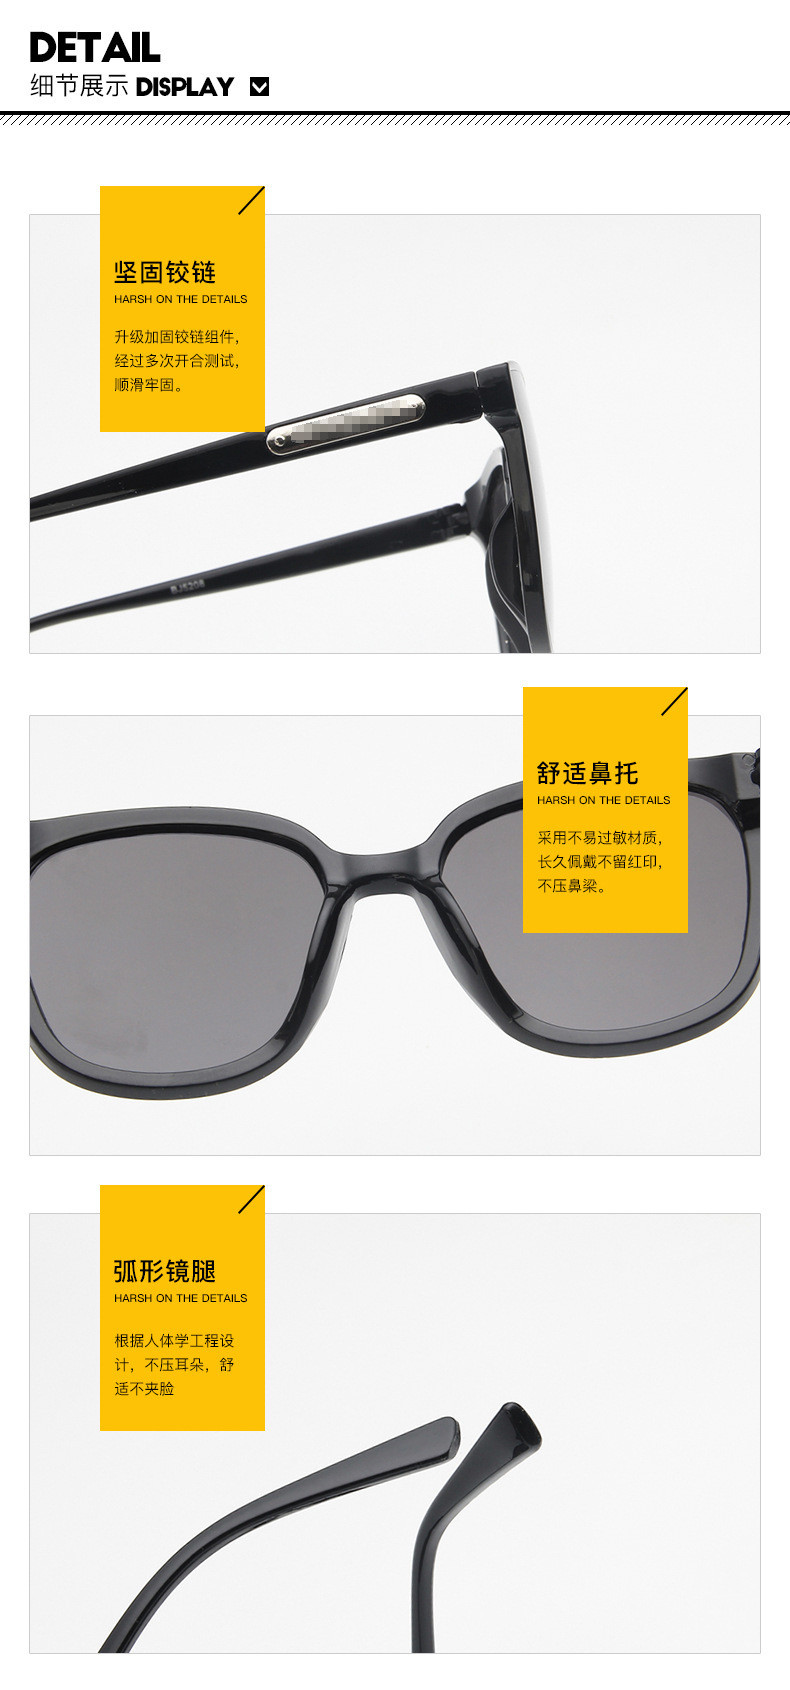 普琳丝 方形太阳镜男士网红同款2020新款墨镜韩版潮流太阳眼镜